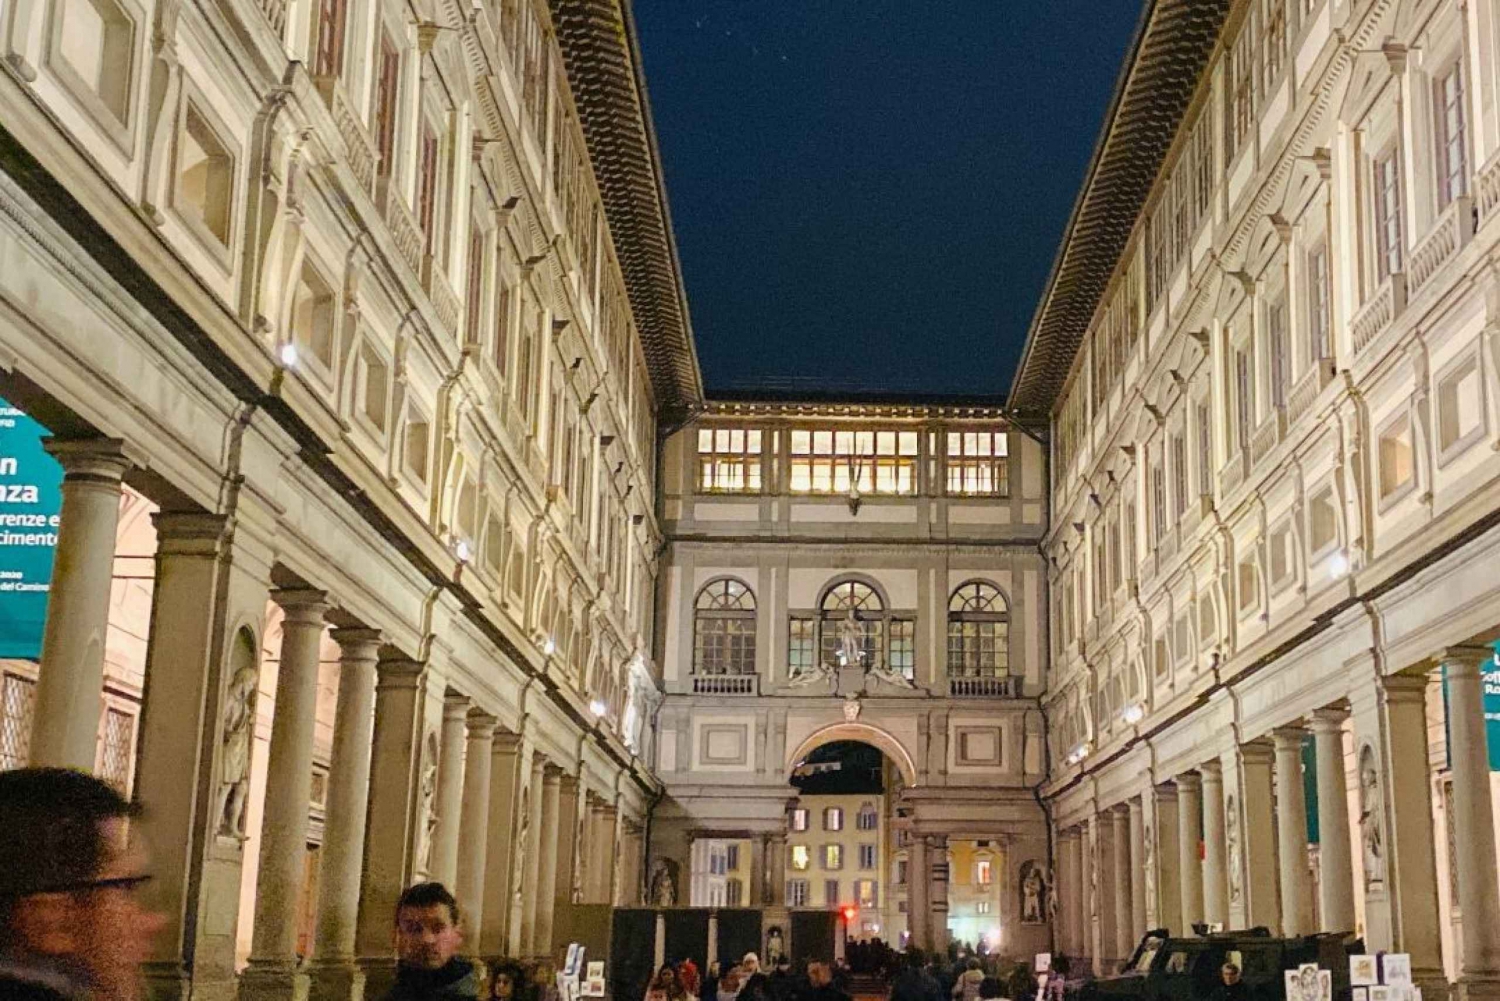 Adgangsbilletter til Uffizi-galleriet i Firenze